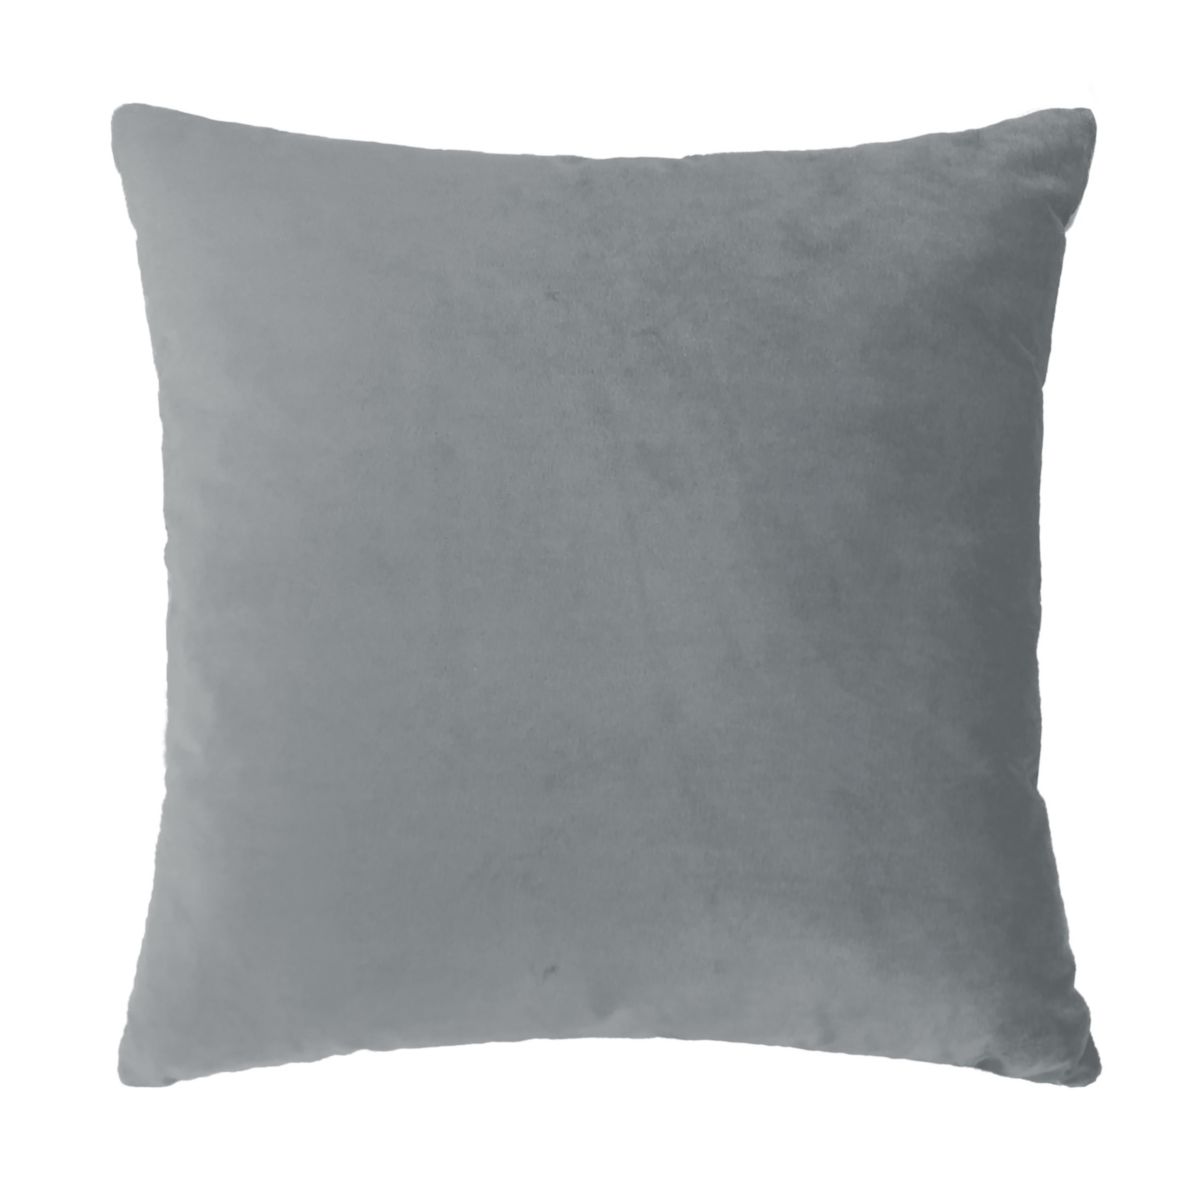 Harper Lane® Solid Velvet Throw Pillow Harper Lane